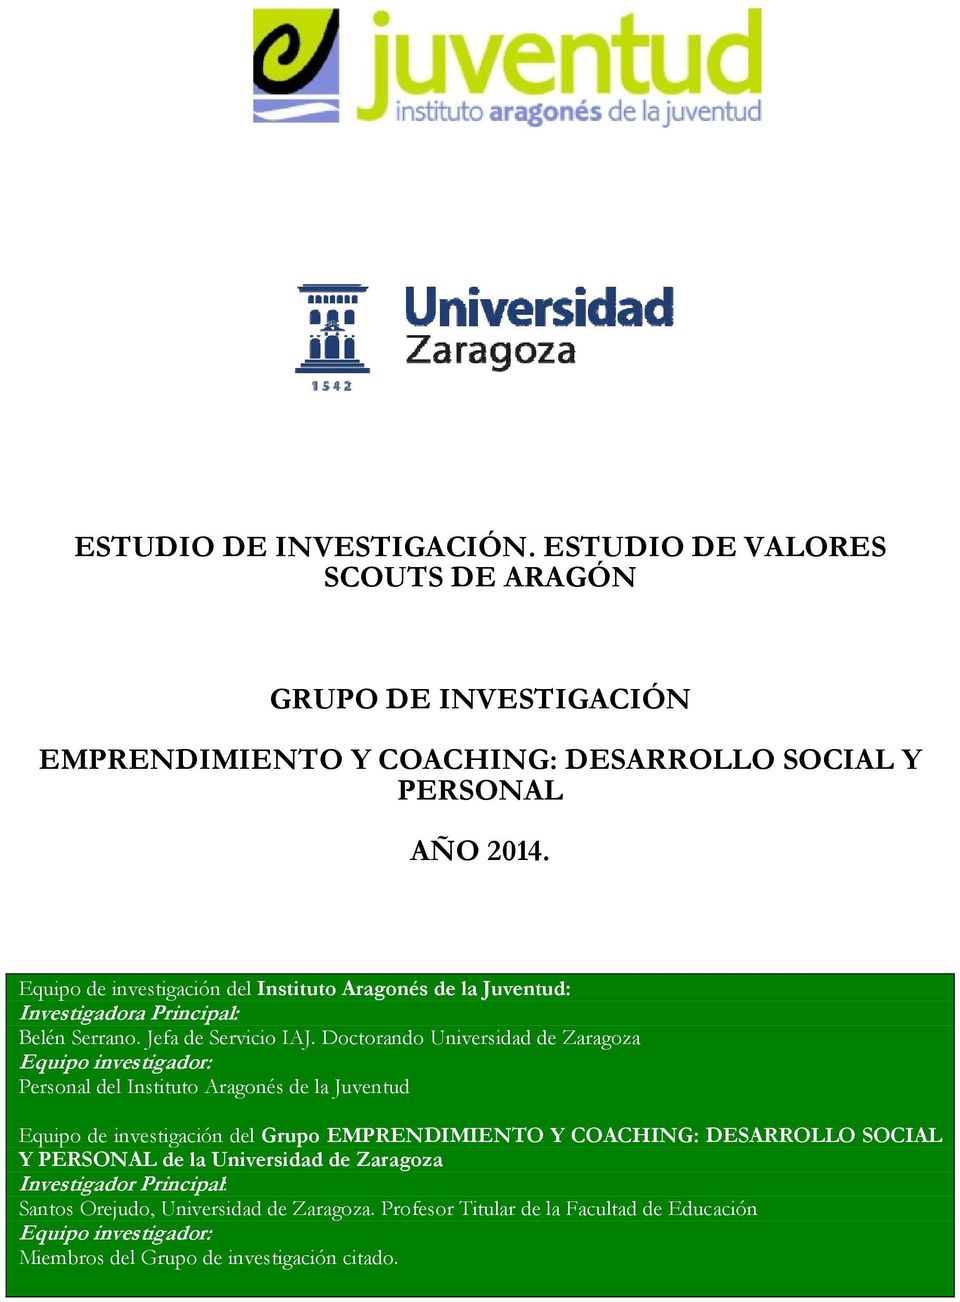 Doctorando Universidad de Zaragoza Equipo investigador: Personal del Instituto Aragonés de la Juventud Equipo de investigación del Grupo EMPRENDIMIENTO Y COACHING: